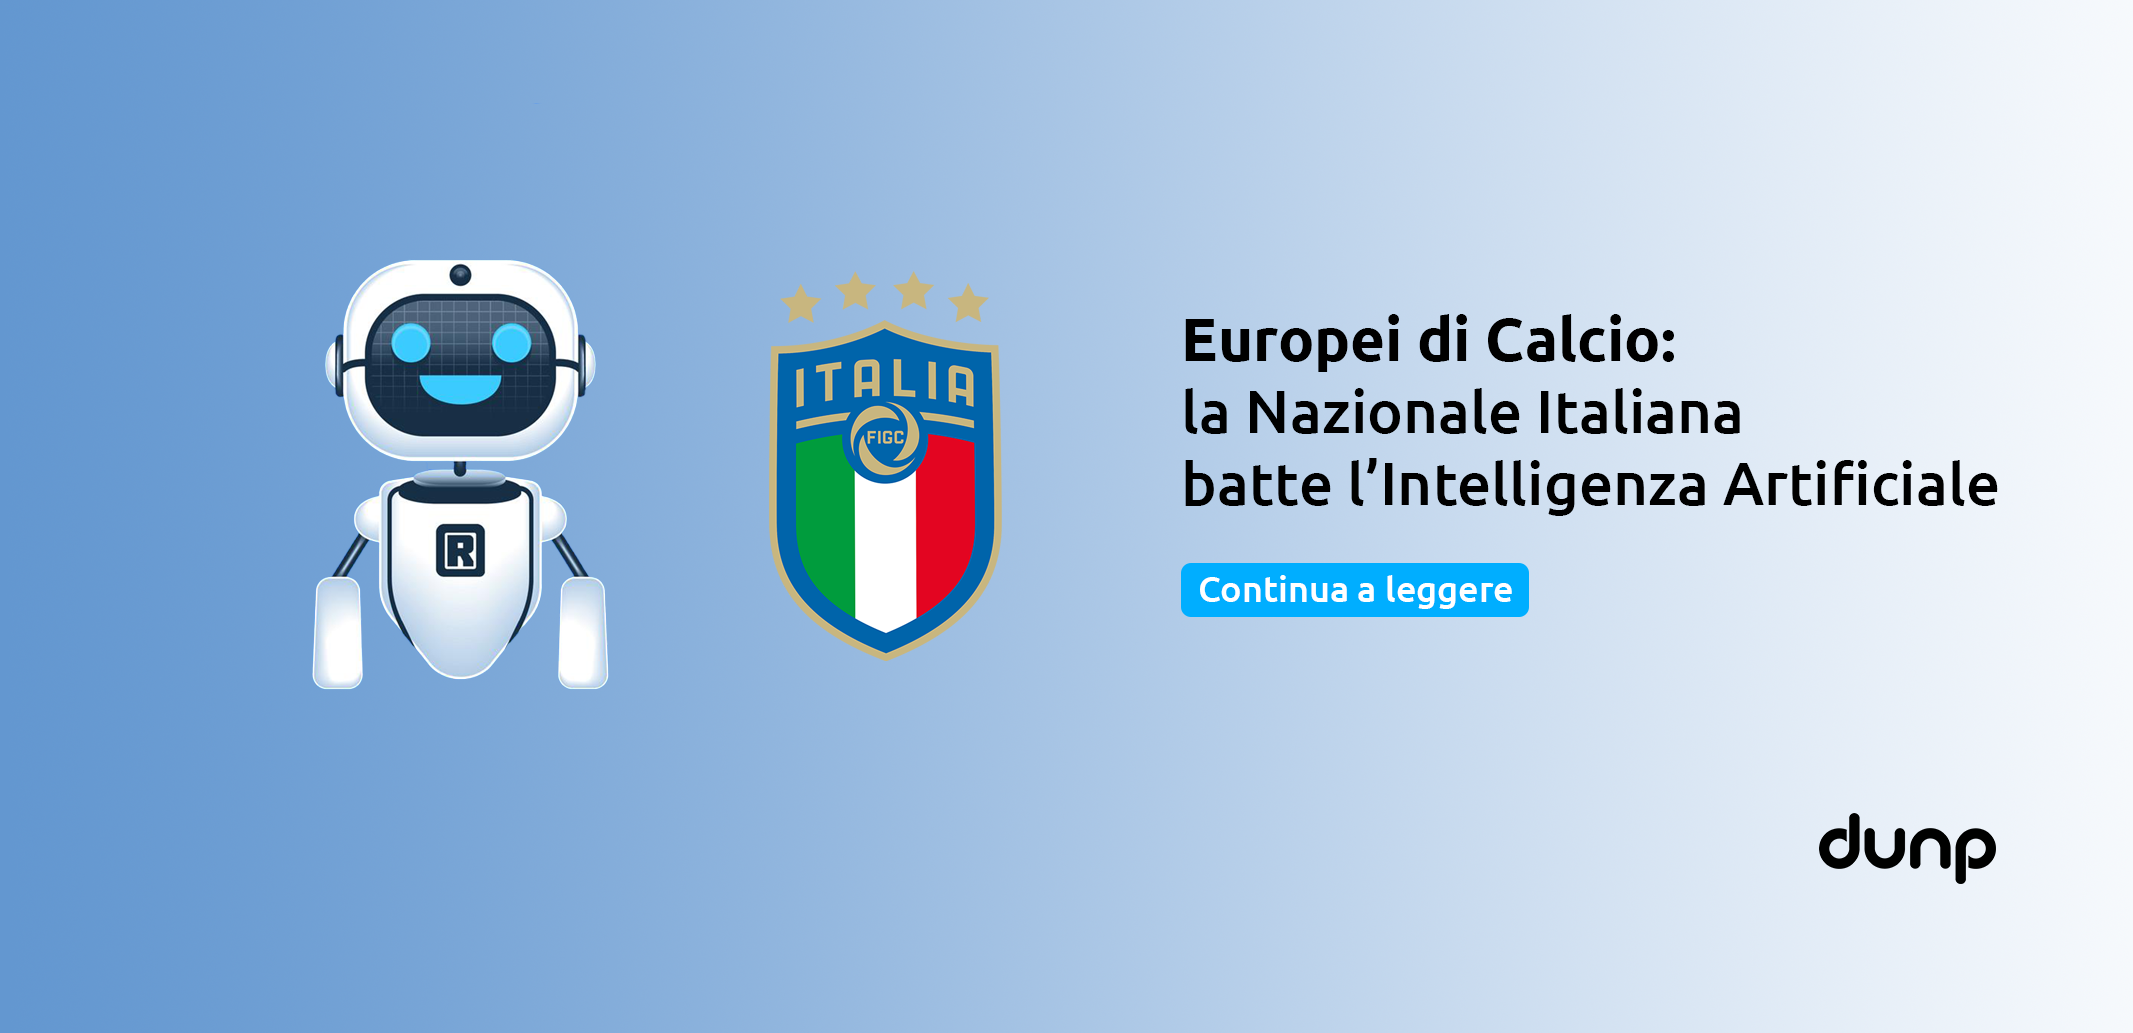 Europei di calcio: la Nazionale Italiana batte l’Intelligenza Artificiale